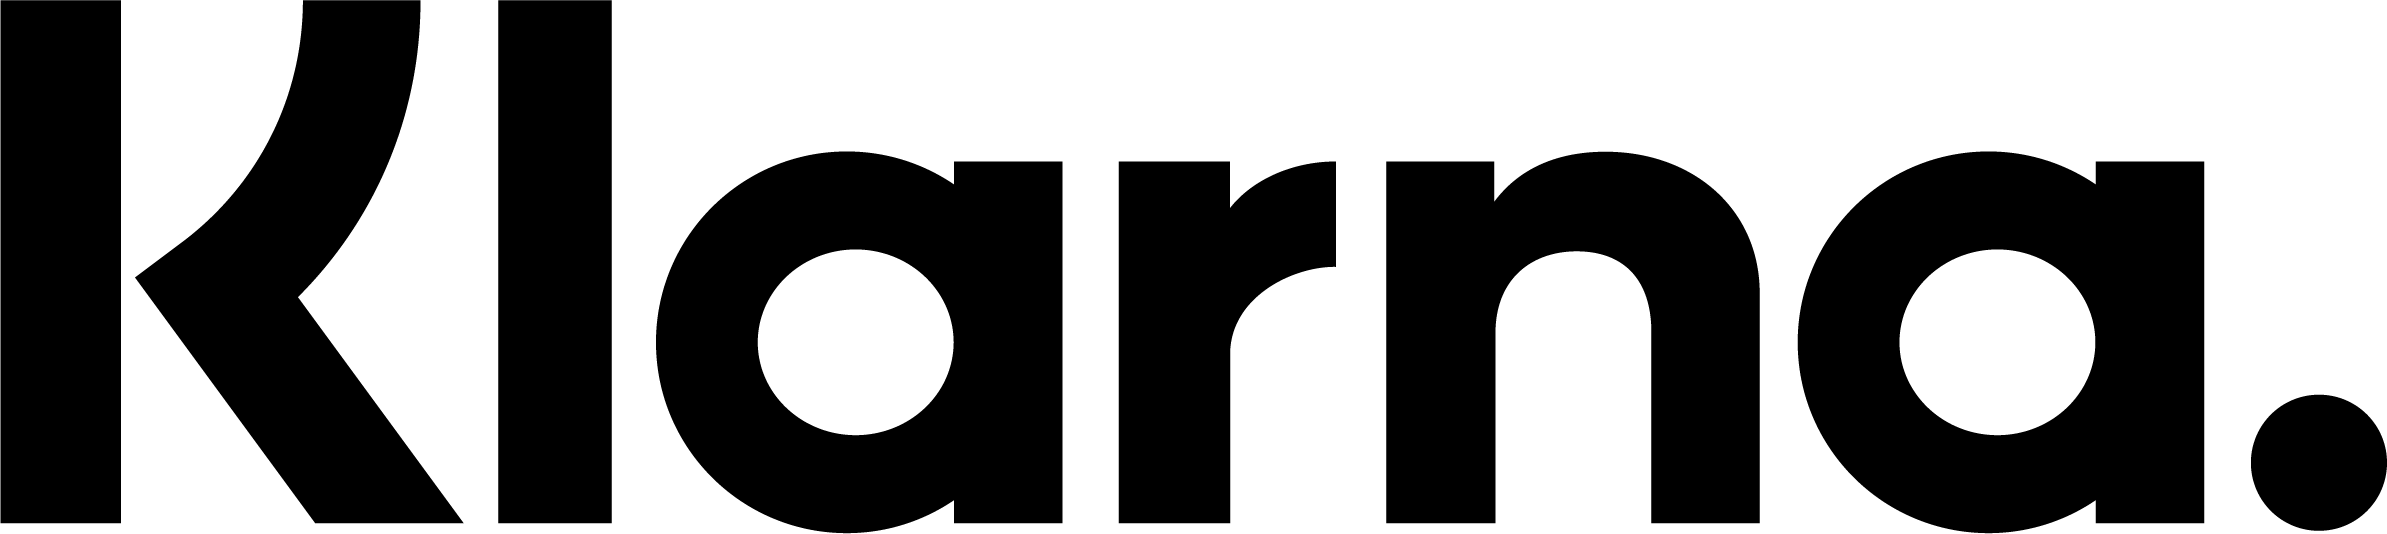 Klarrna logo black